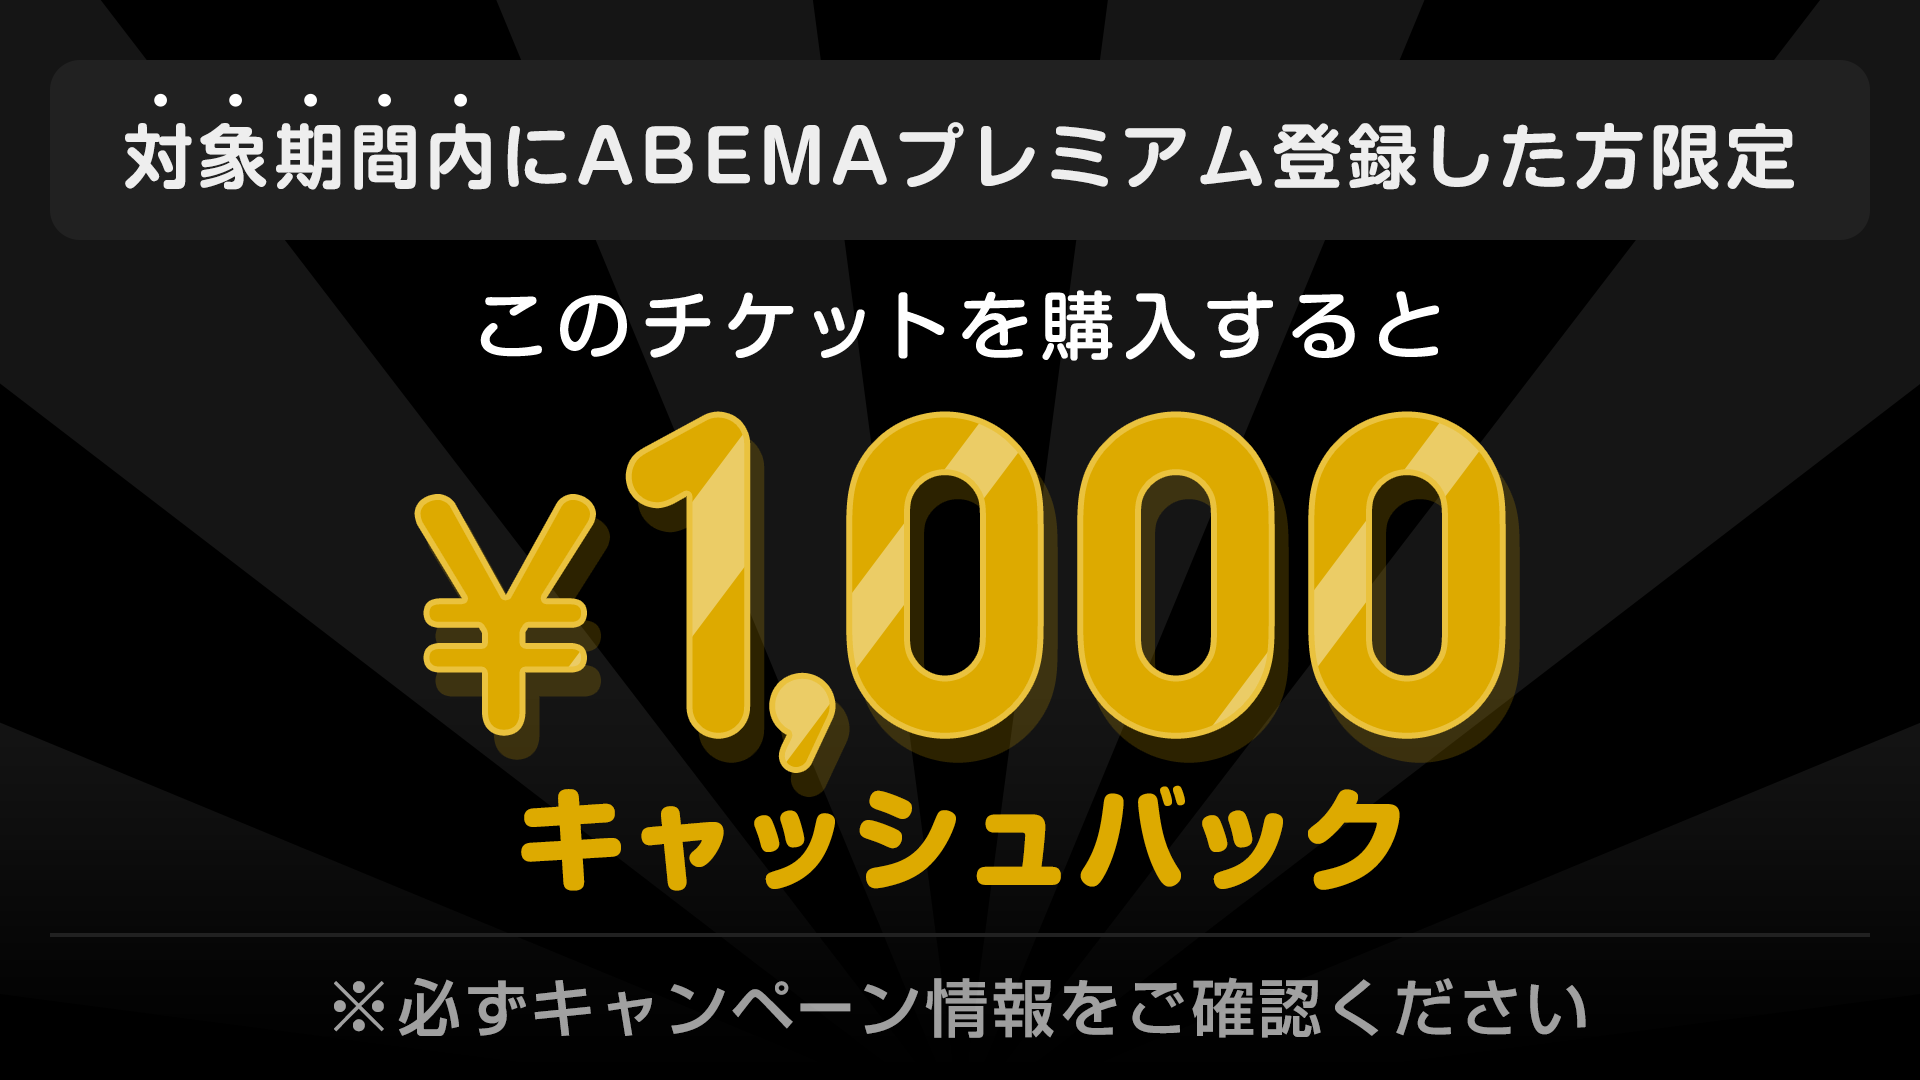 対象期間内にABEMAプレミアム登録した方限定 このチケットを購入すると ¥1000キャッシュバック